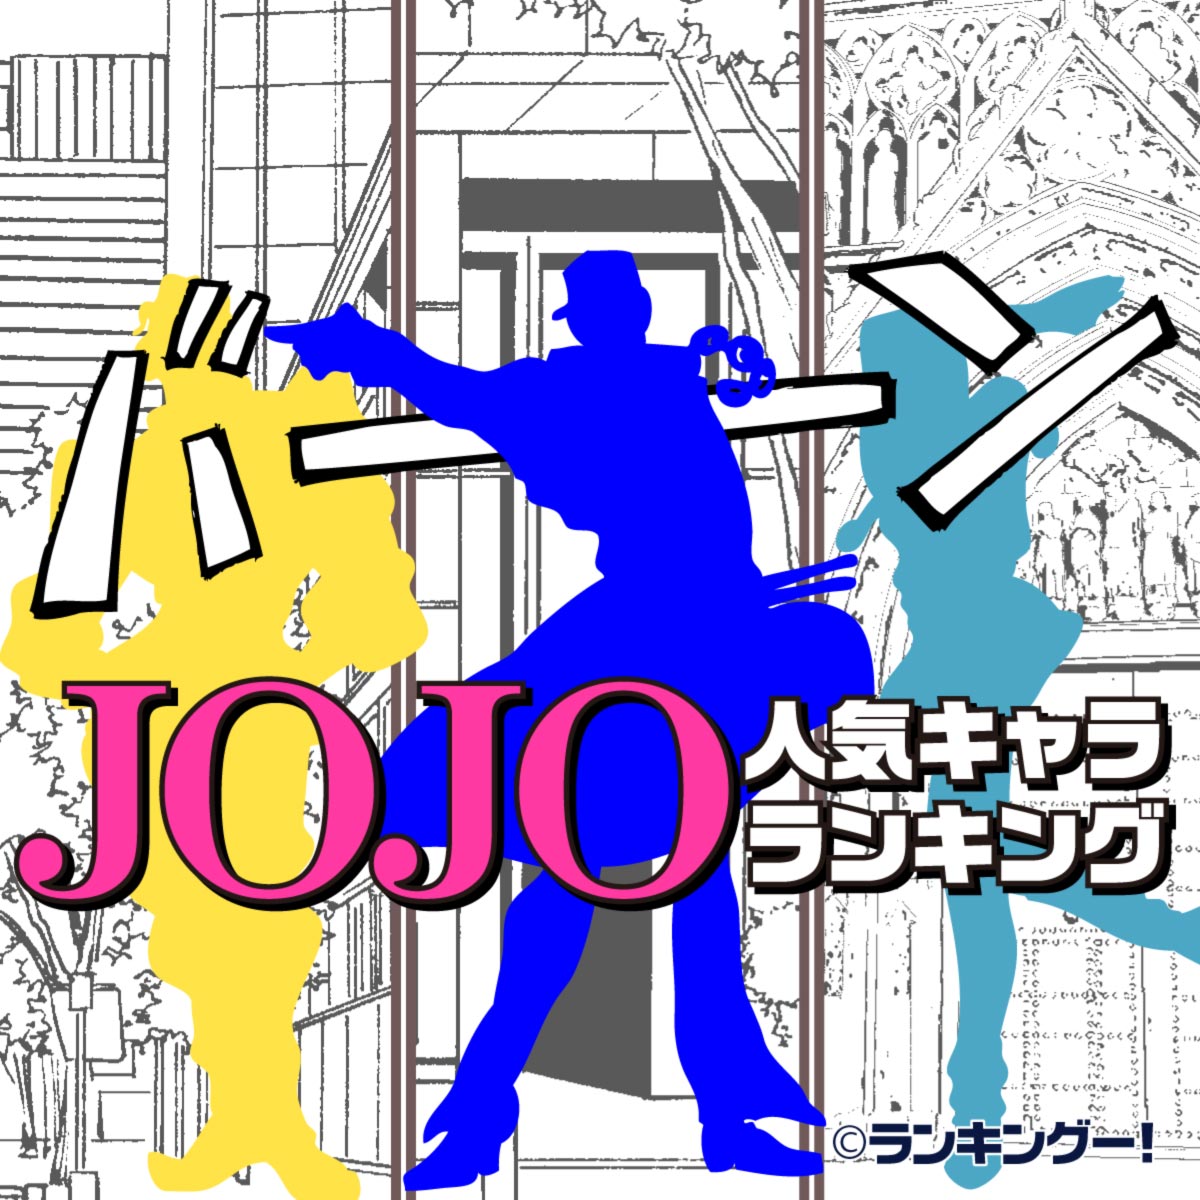 ジョジョ Jojo の奇妙な冒険 人気キャラランキングtop20 16 20位 ランキングー